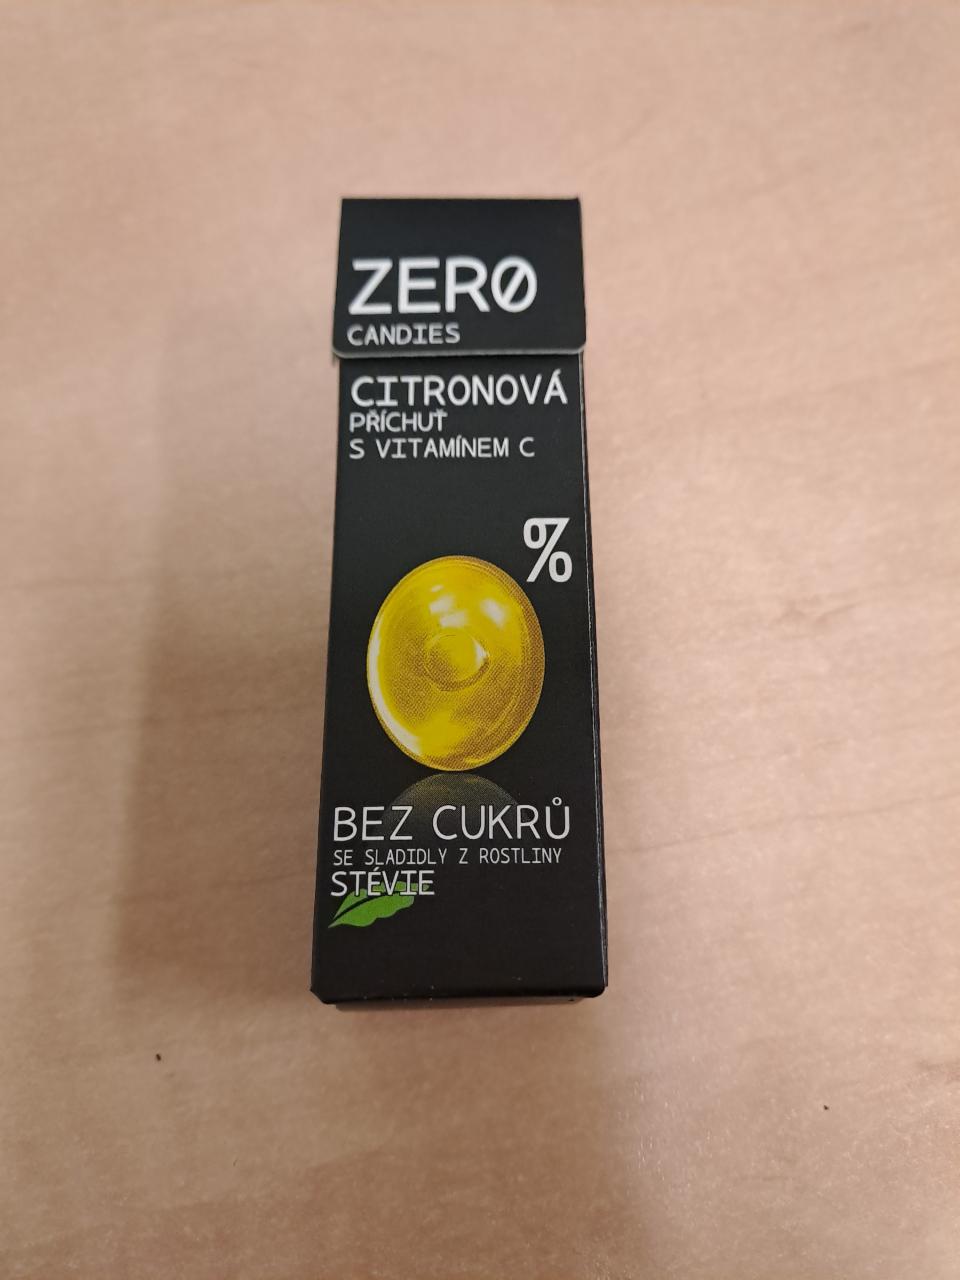 Fotografie - Zero Candies citronové s vitamínem C